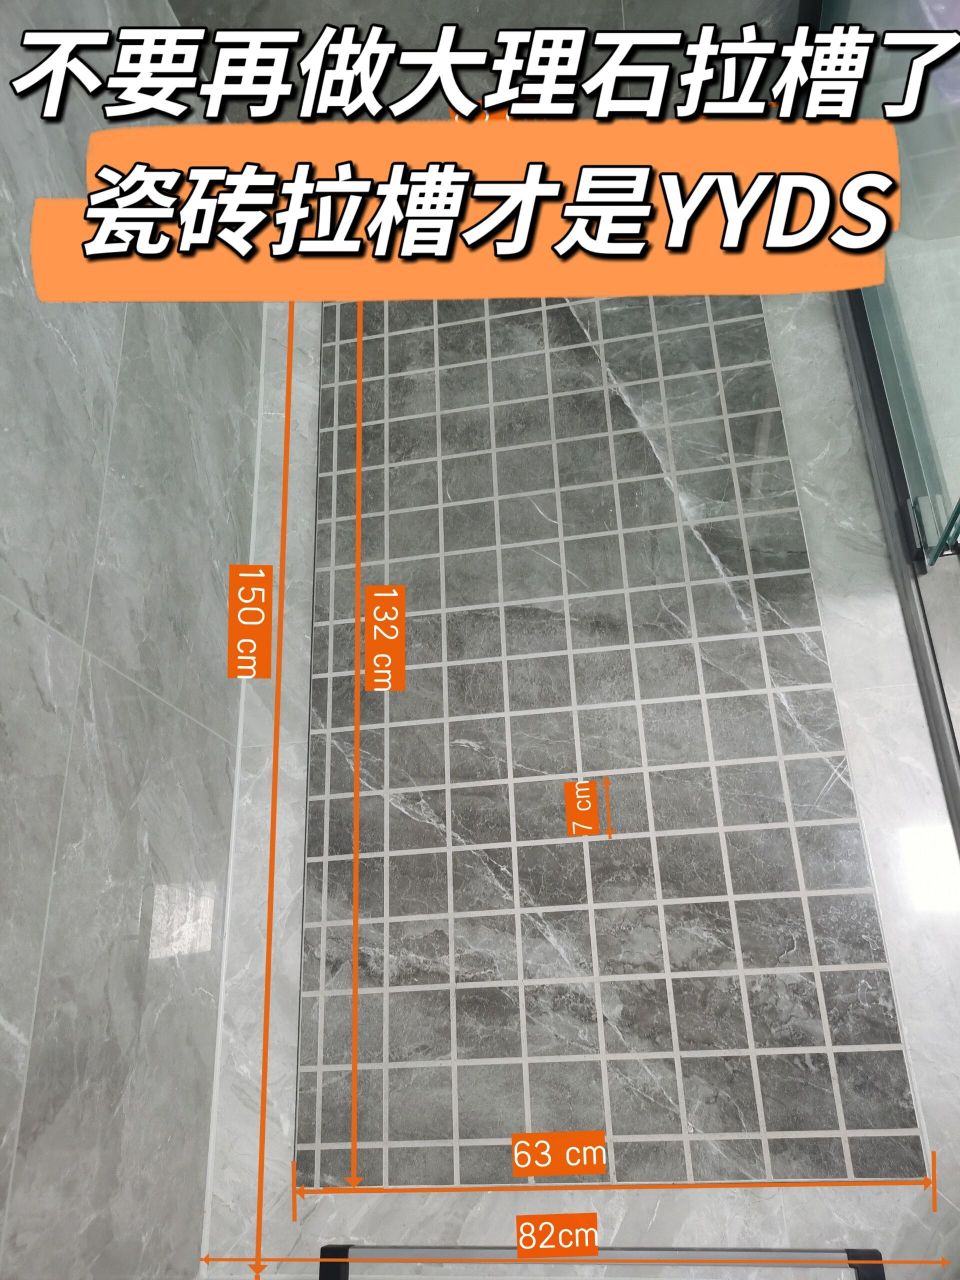 卫生间淋浴区瓷砖拉槽比大理石拉更赞6015 首先和最关键的!